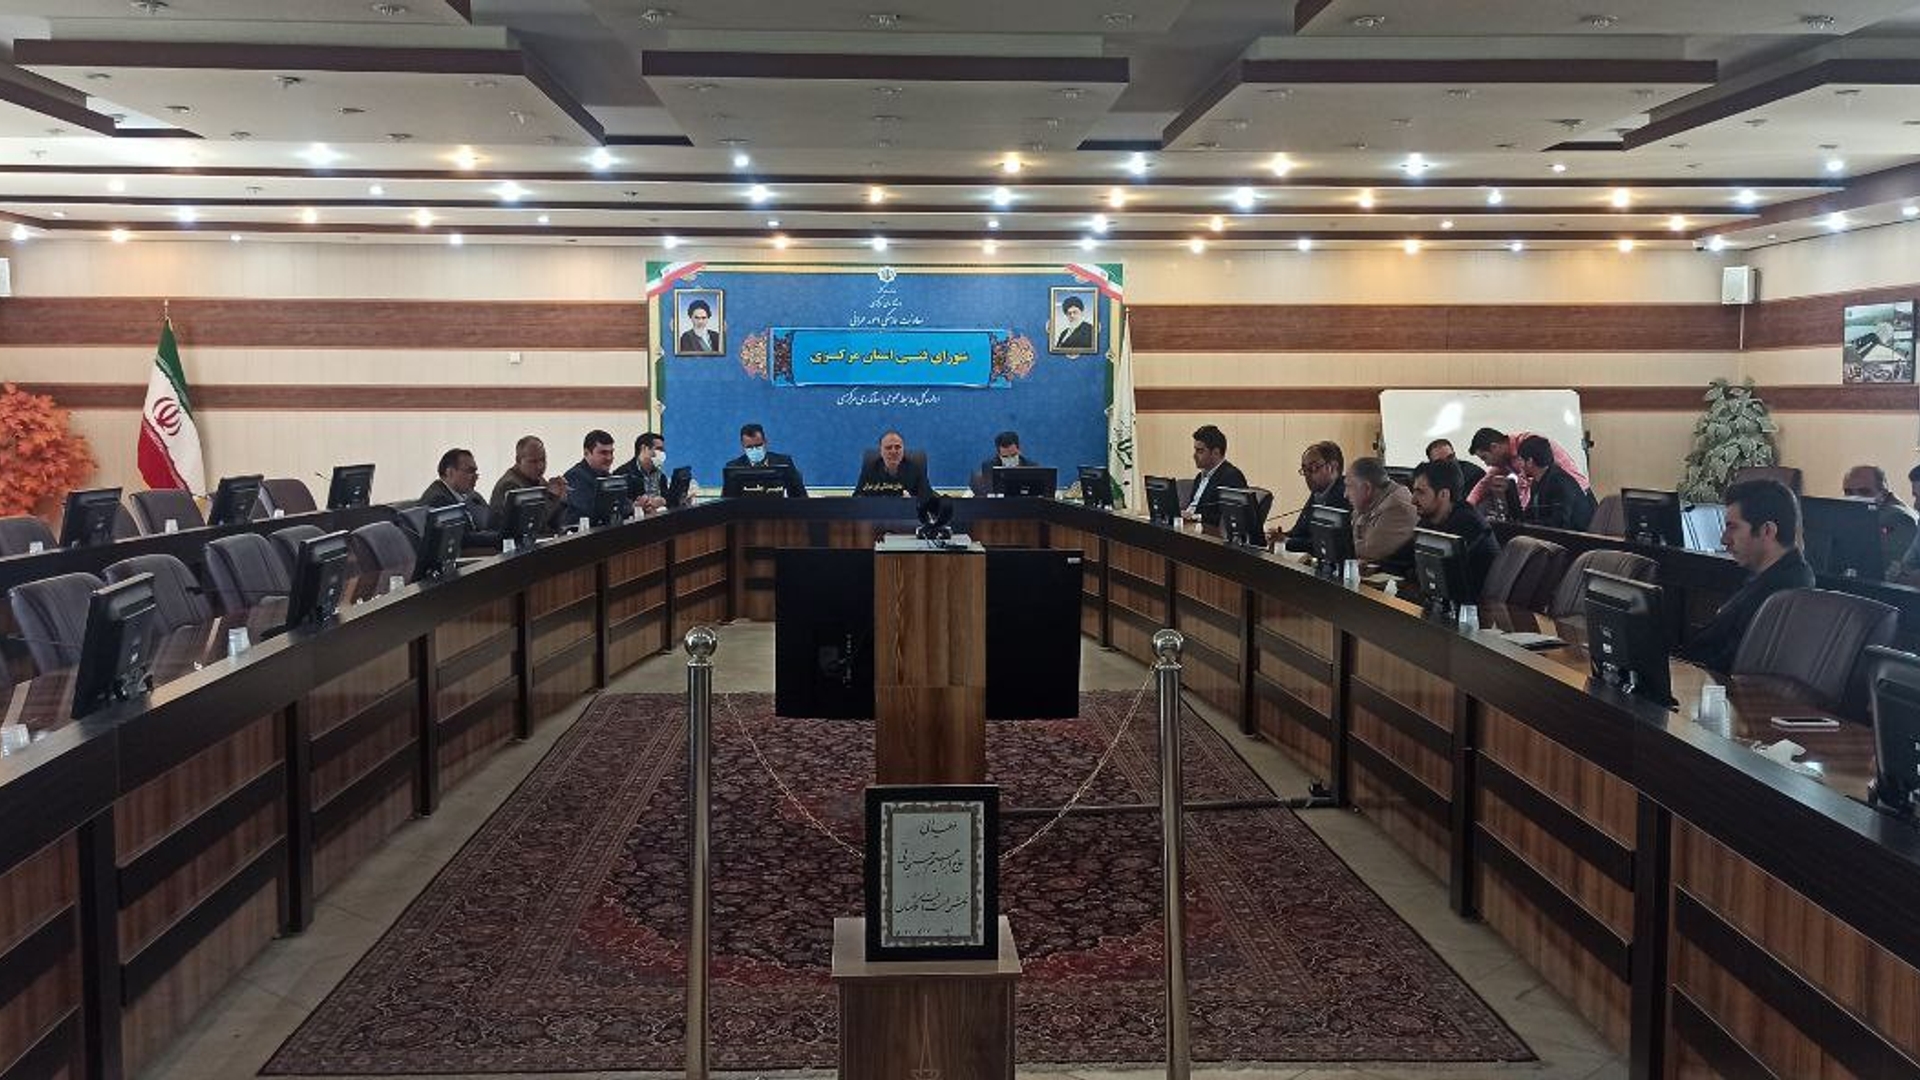 اولین کمیته شورای فنی استان مرکزی در سال جدید برگزار گردید